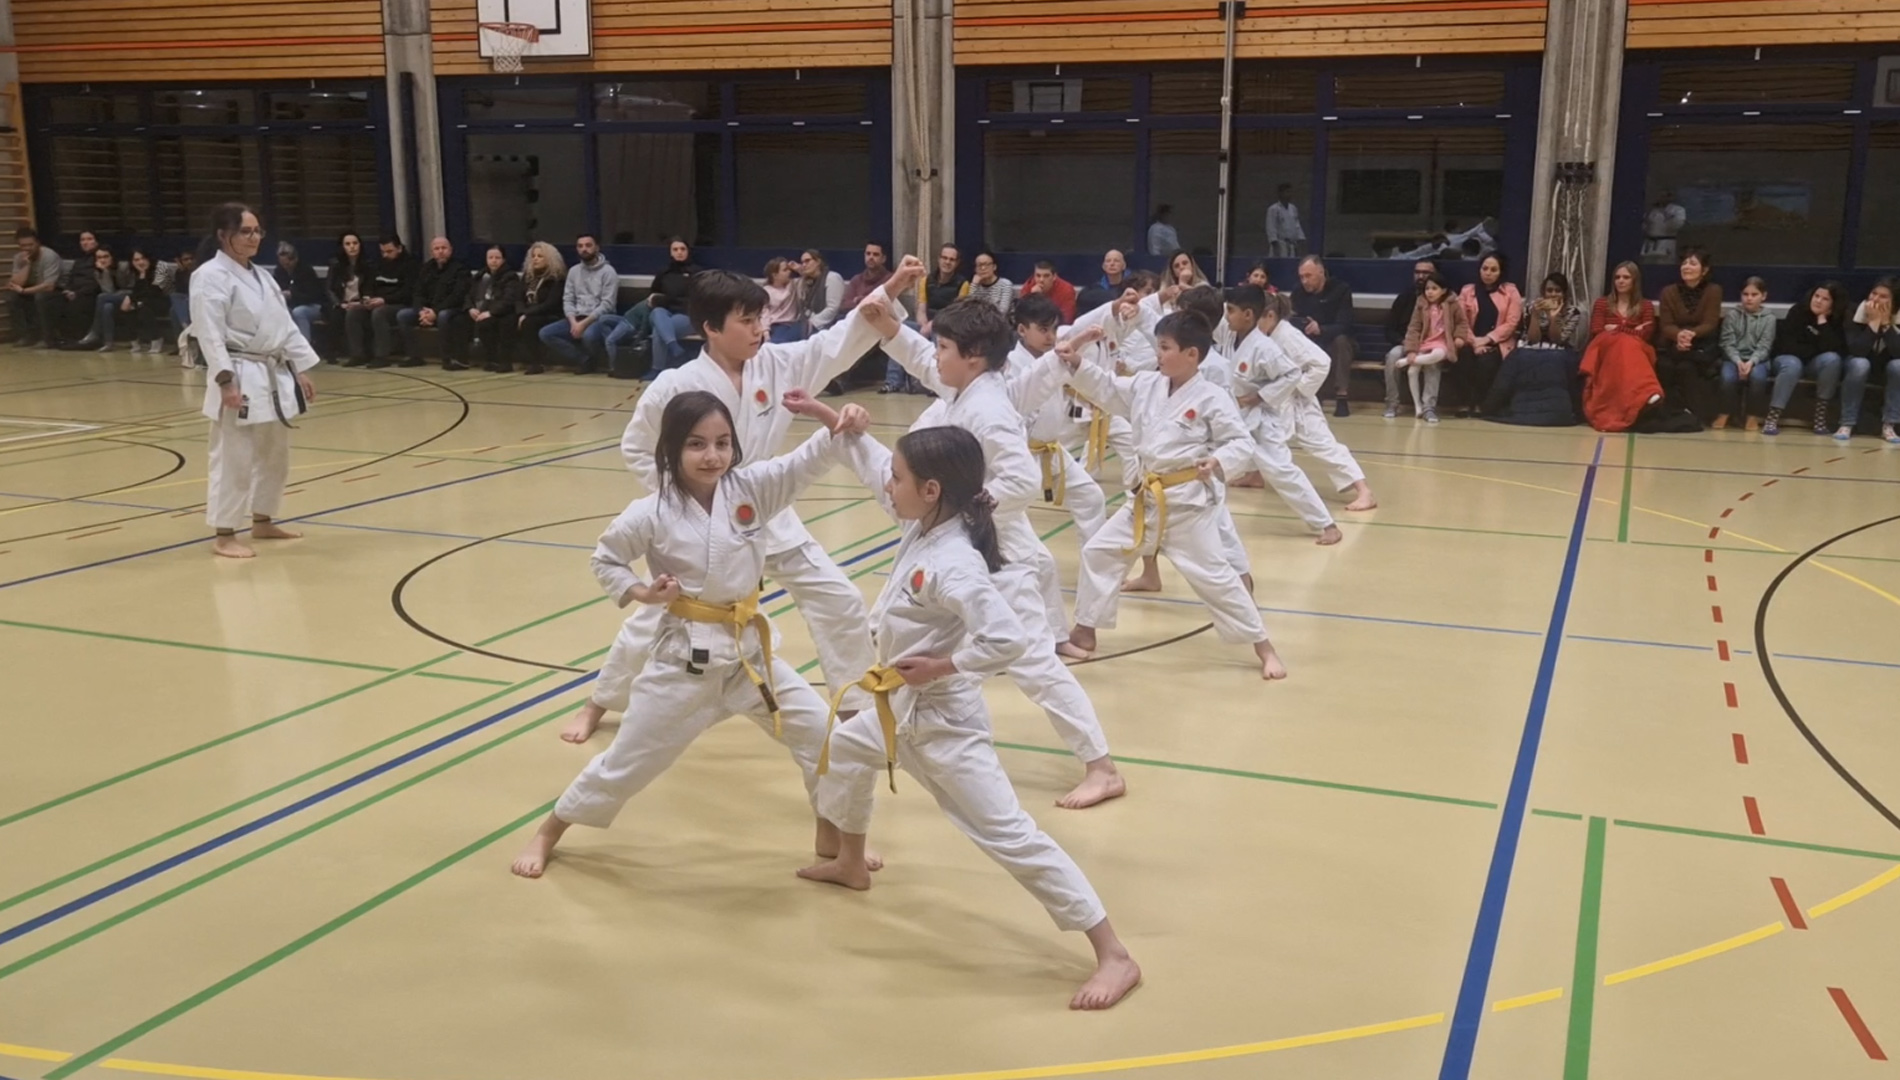 Kinder karate kampfsport aarau aargau